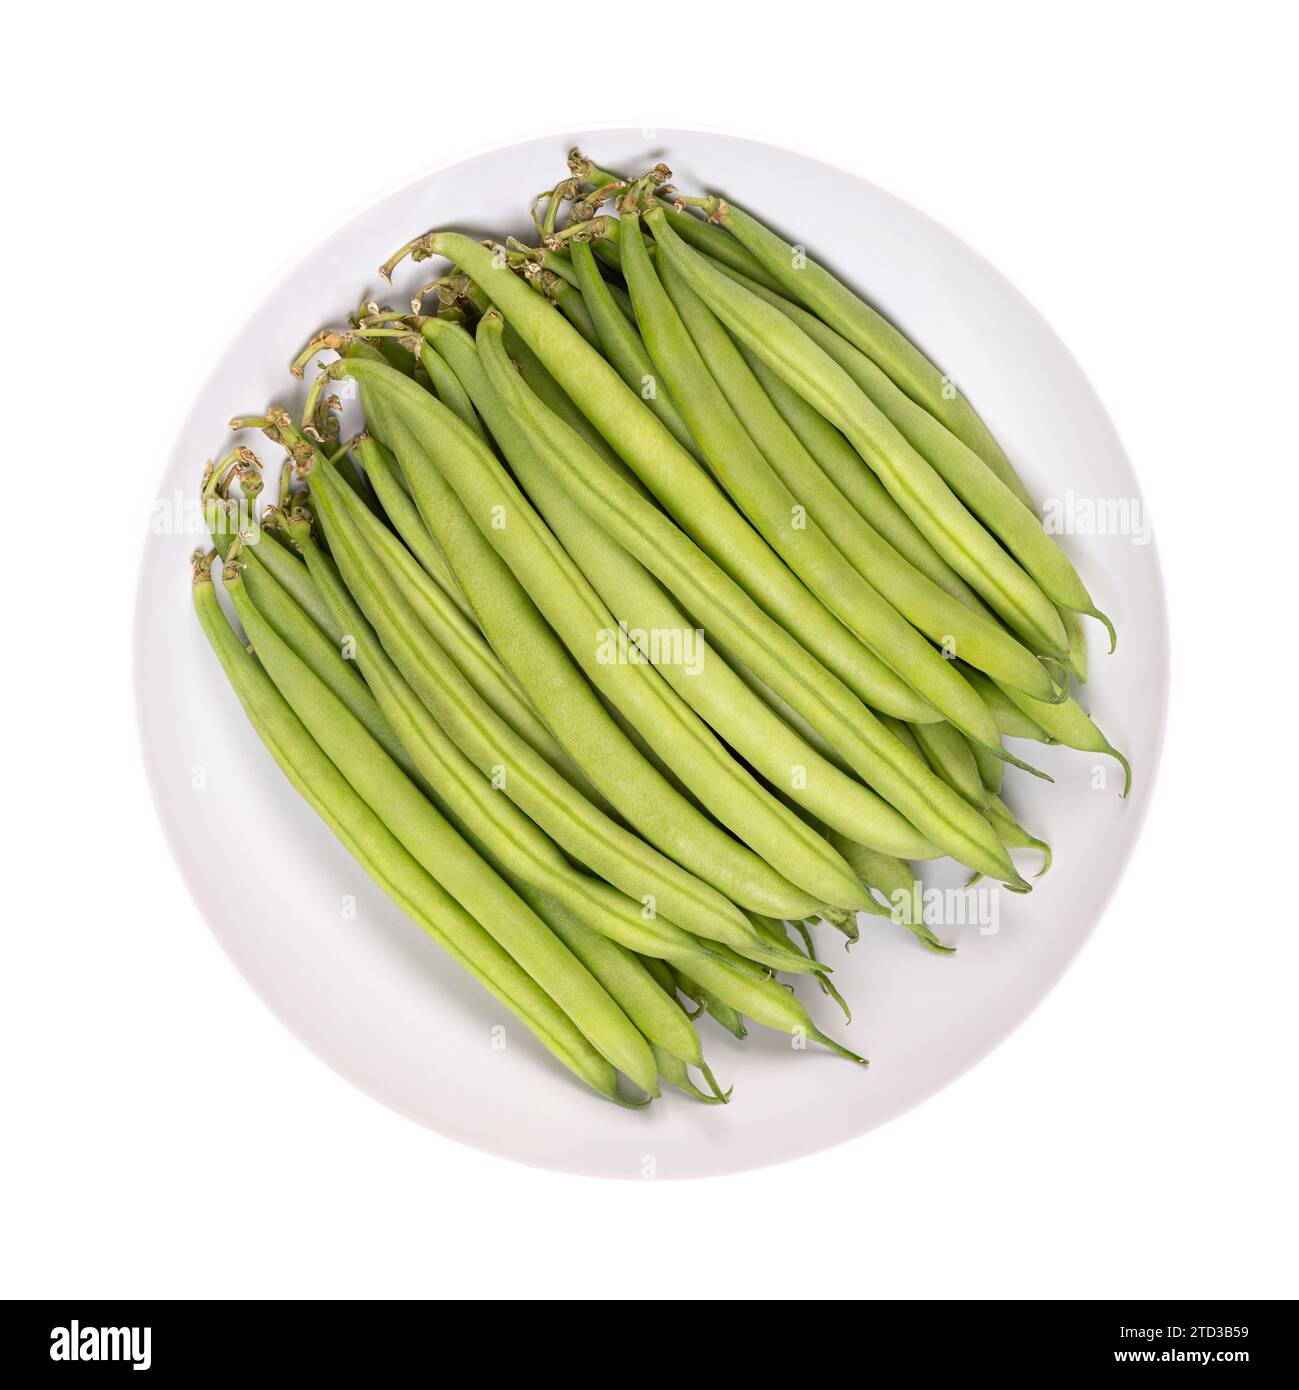 Frische grüne Bohnen in einer weißen Schüssel. Junge, unreife Früchte einer Sorte der gewöhnlichen Bohnen oder auch der französischen Bohnen Phaseolus vulgaris. Nahaufnahme, isoliert. Stockfoto